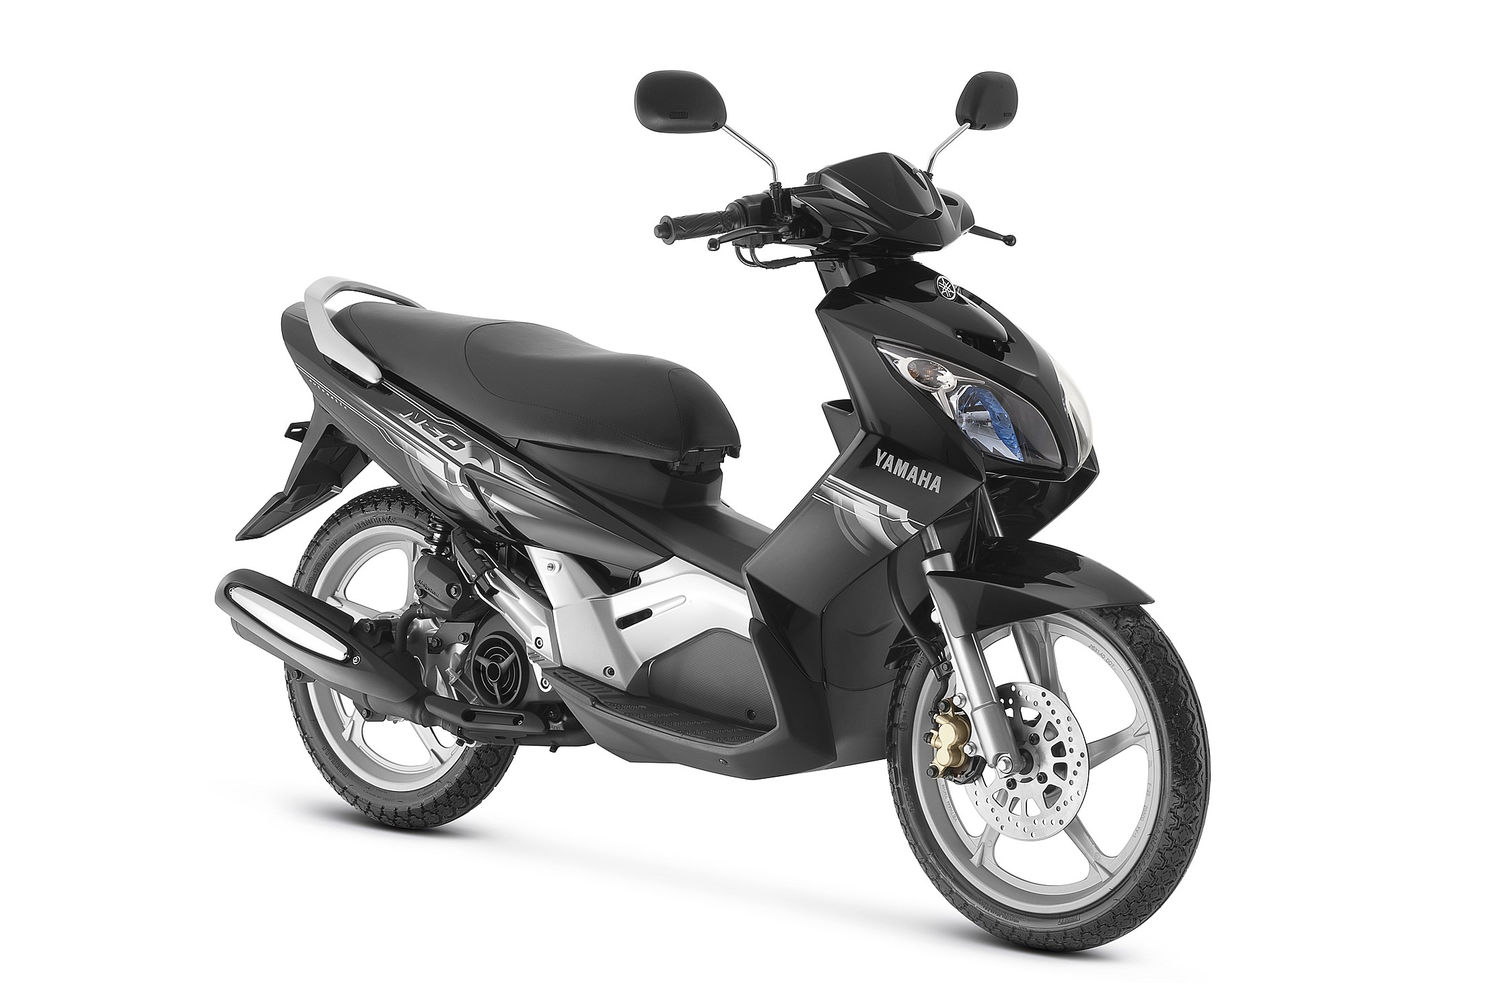 Persuasivo menos saltar 7 motos e scooters usadas que você consegue comprar com R$ 5 mil em 2022 -  MotoNews Brasil